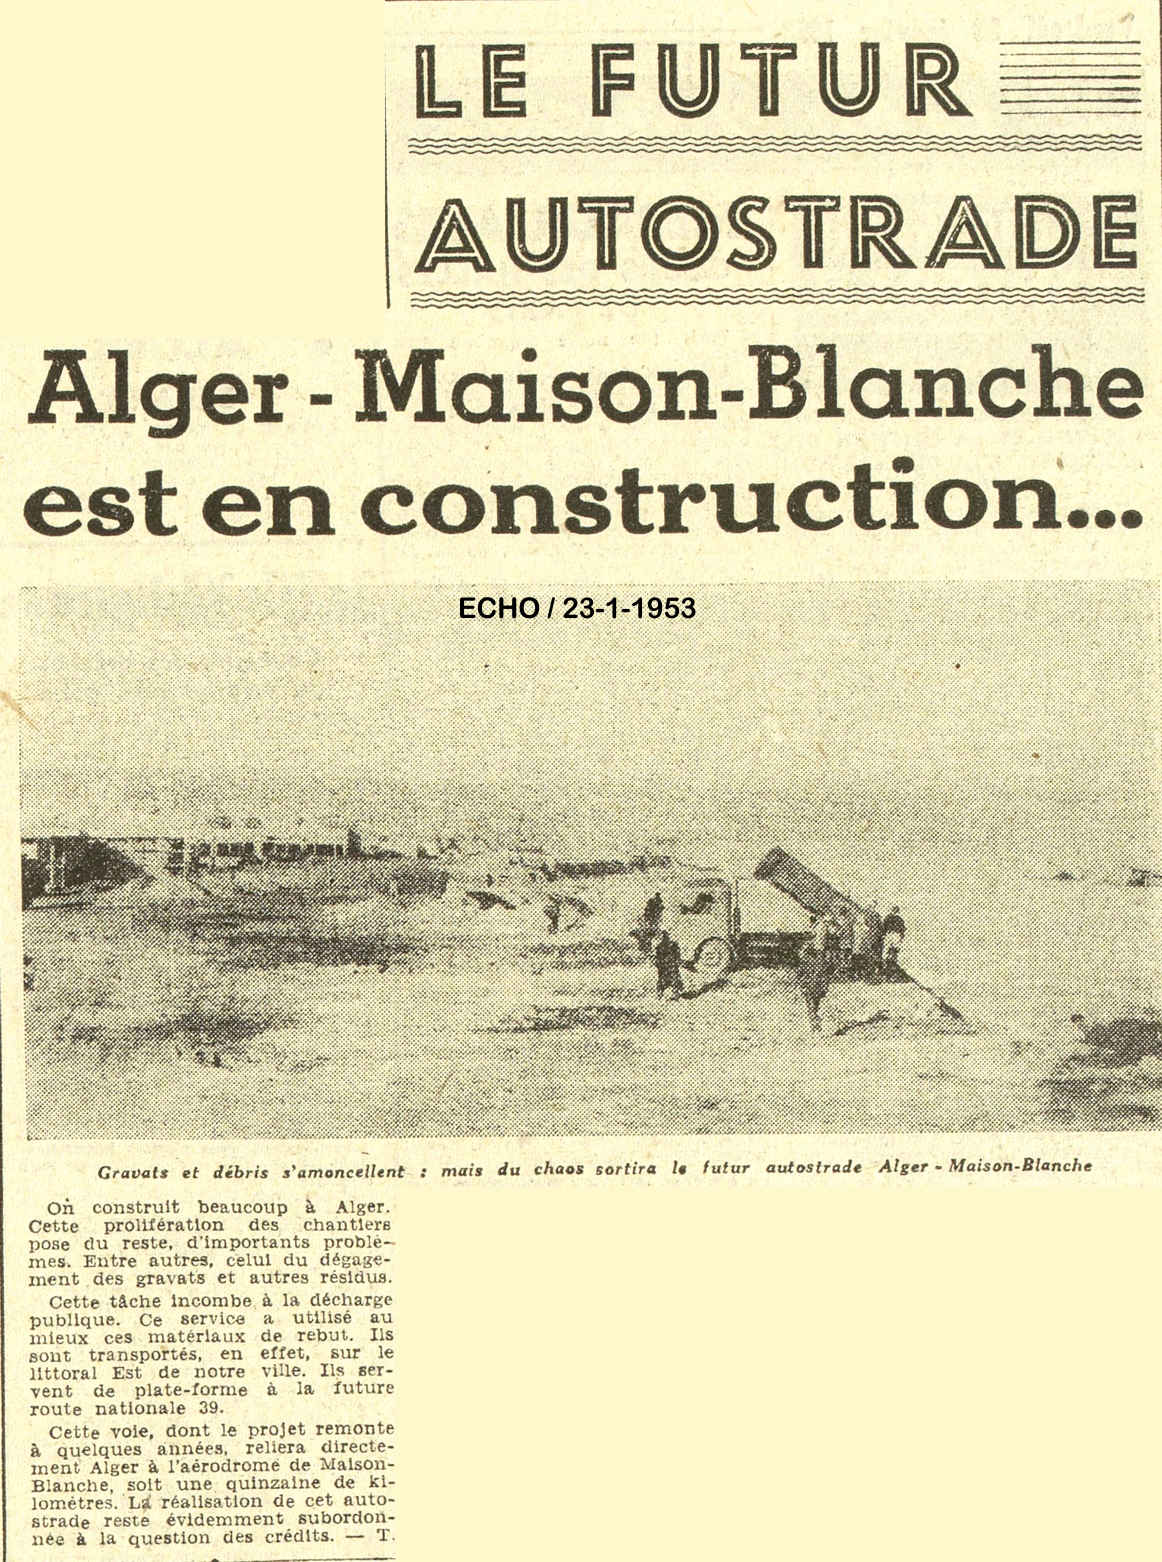 Le Futur Autostrade Alger - Maison-Blanche est en construction...